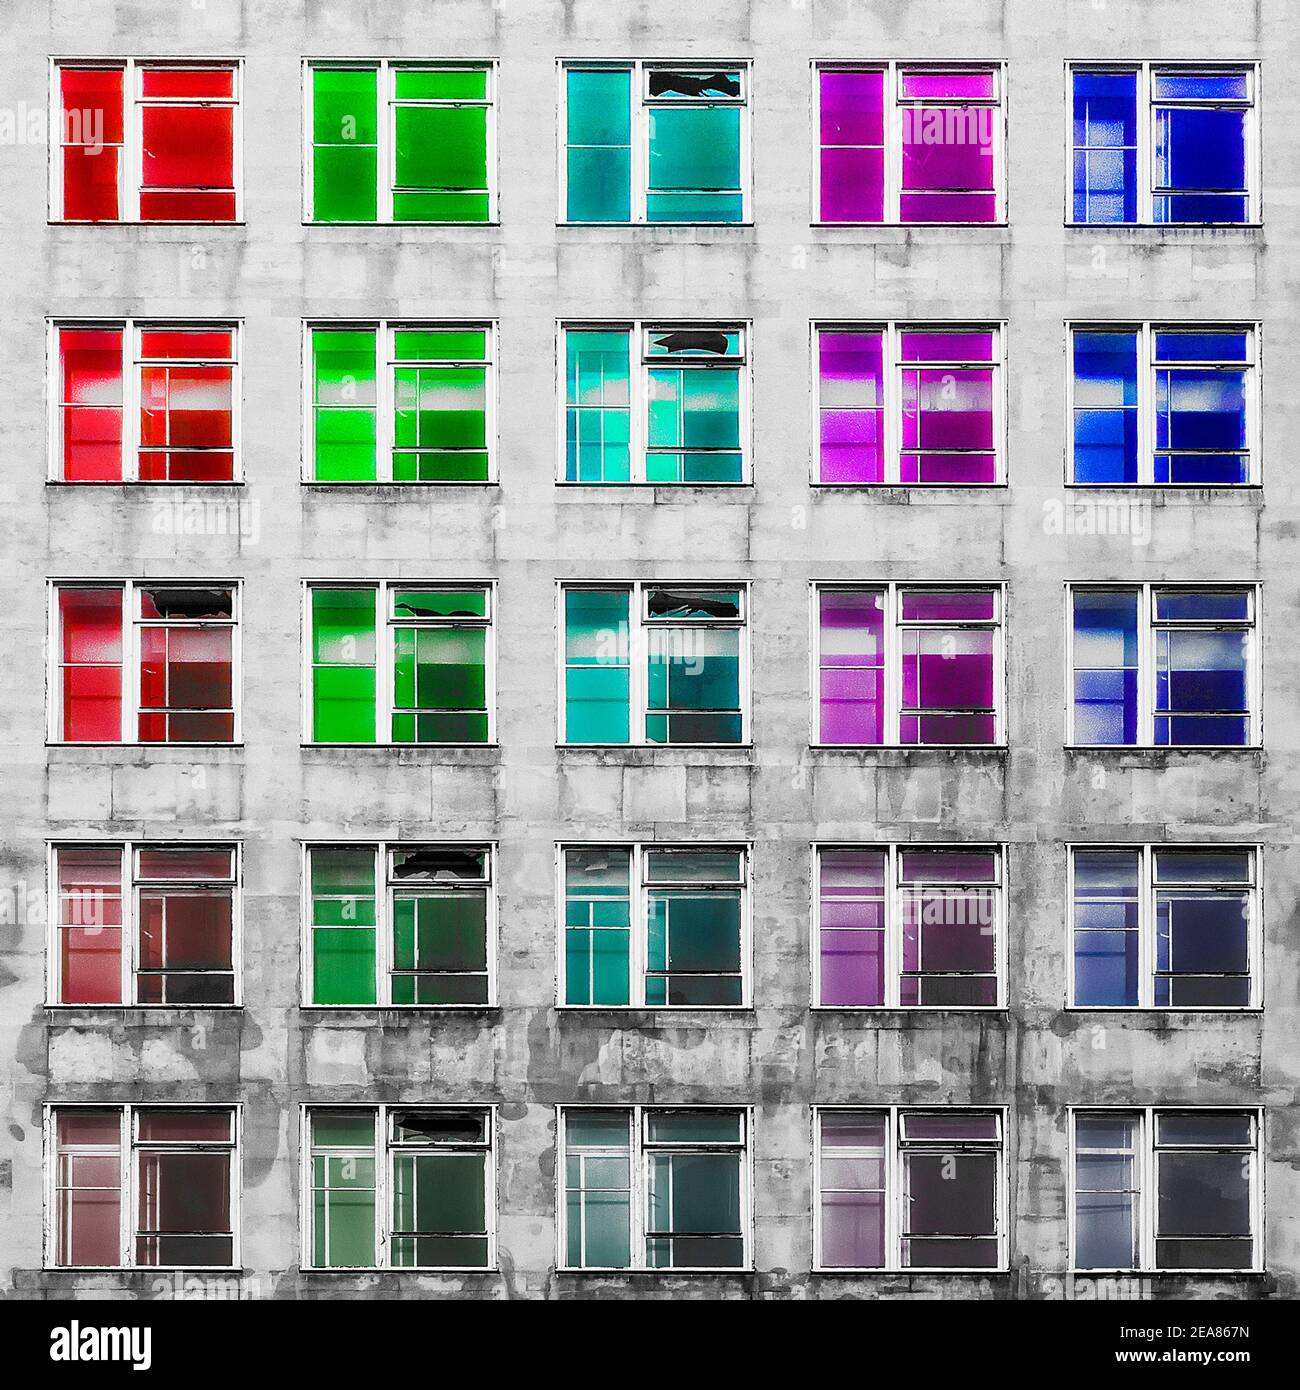 Windows in Pride Colours Stock Photo